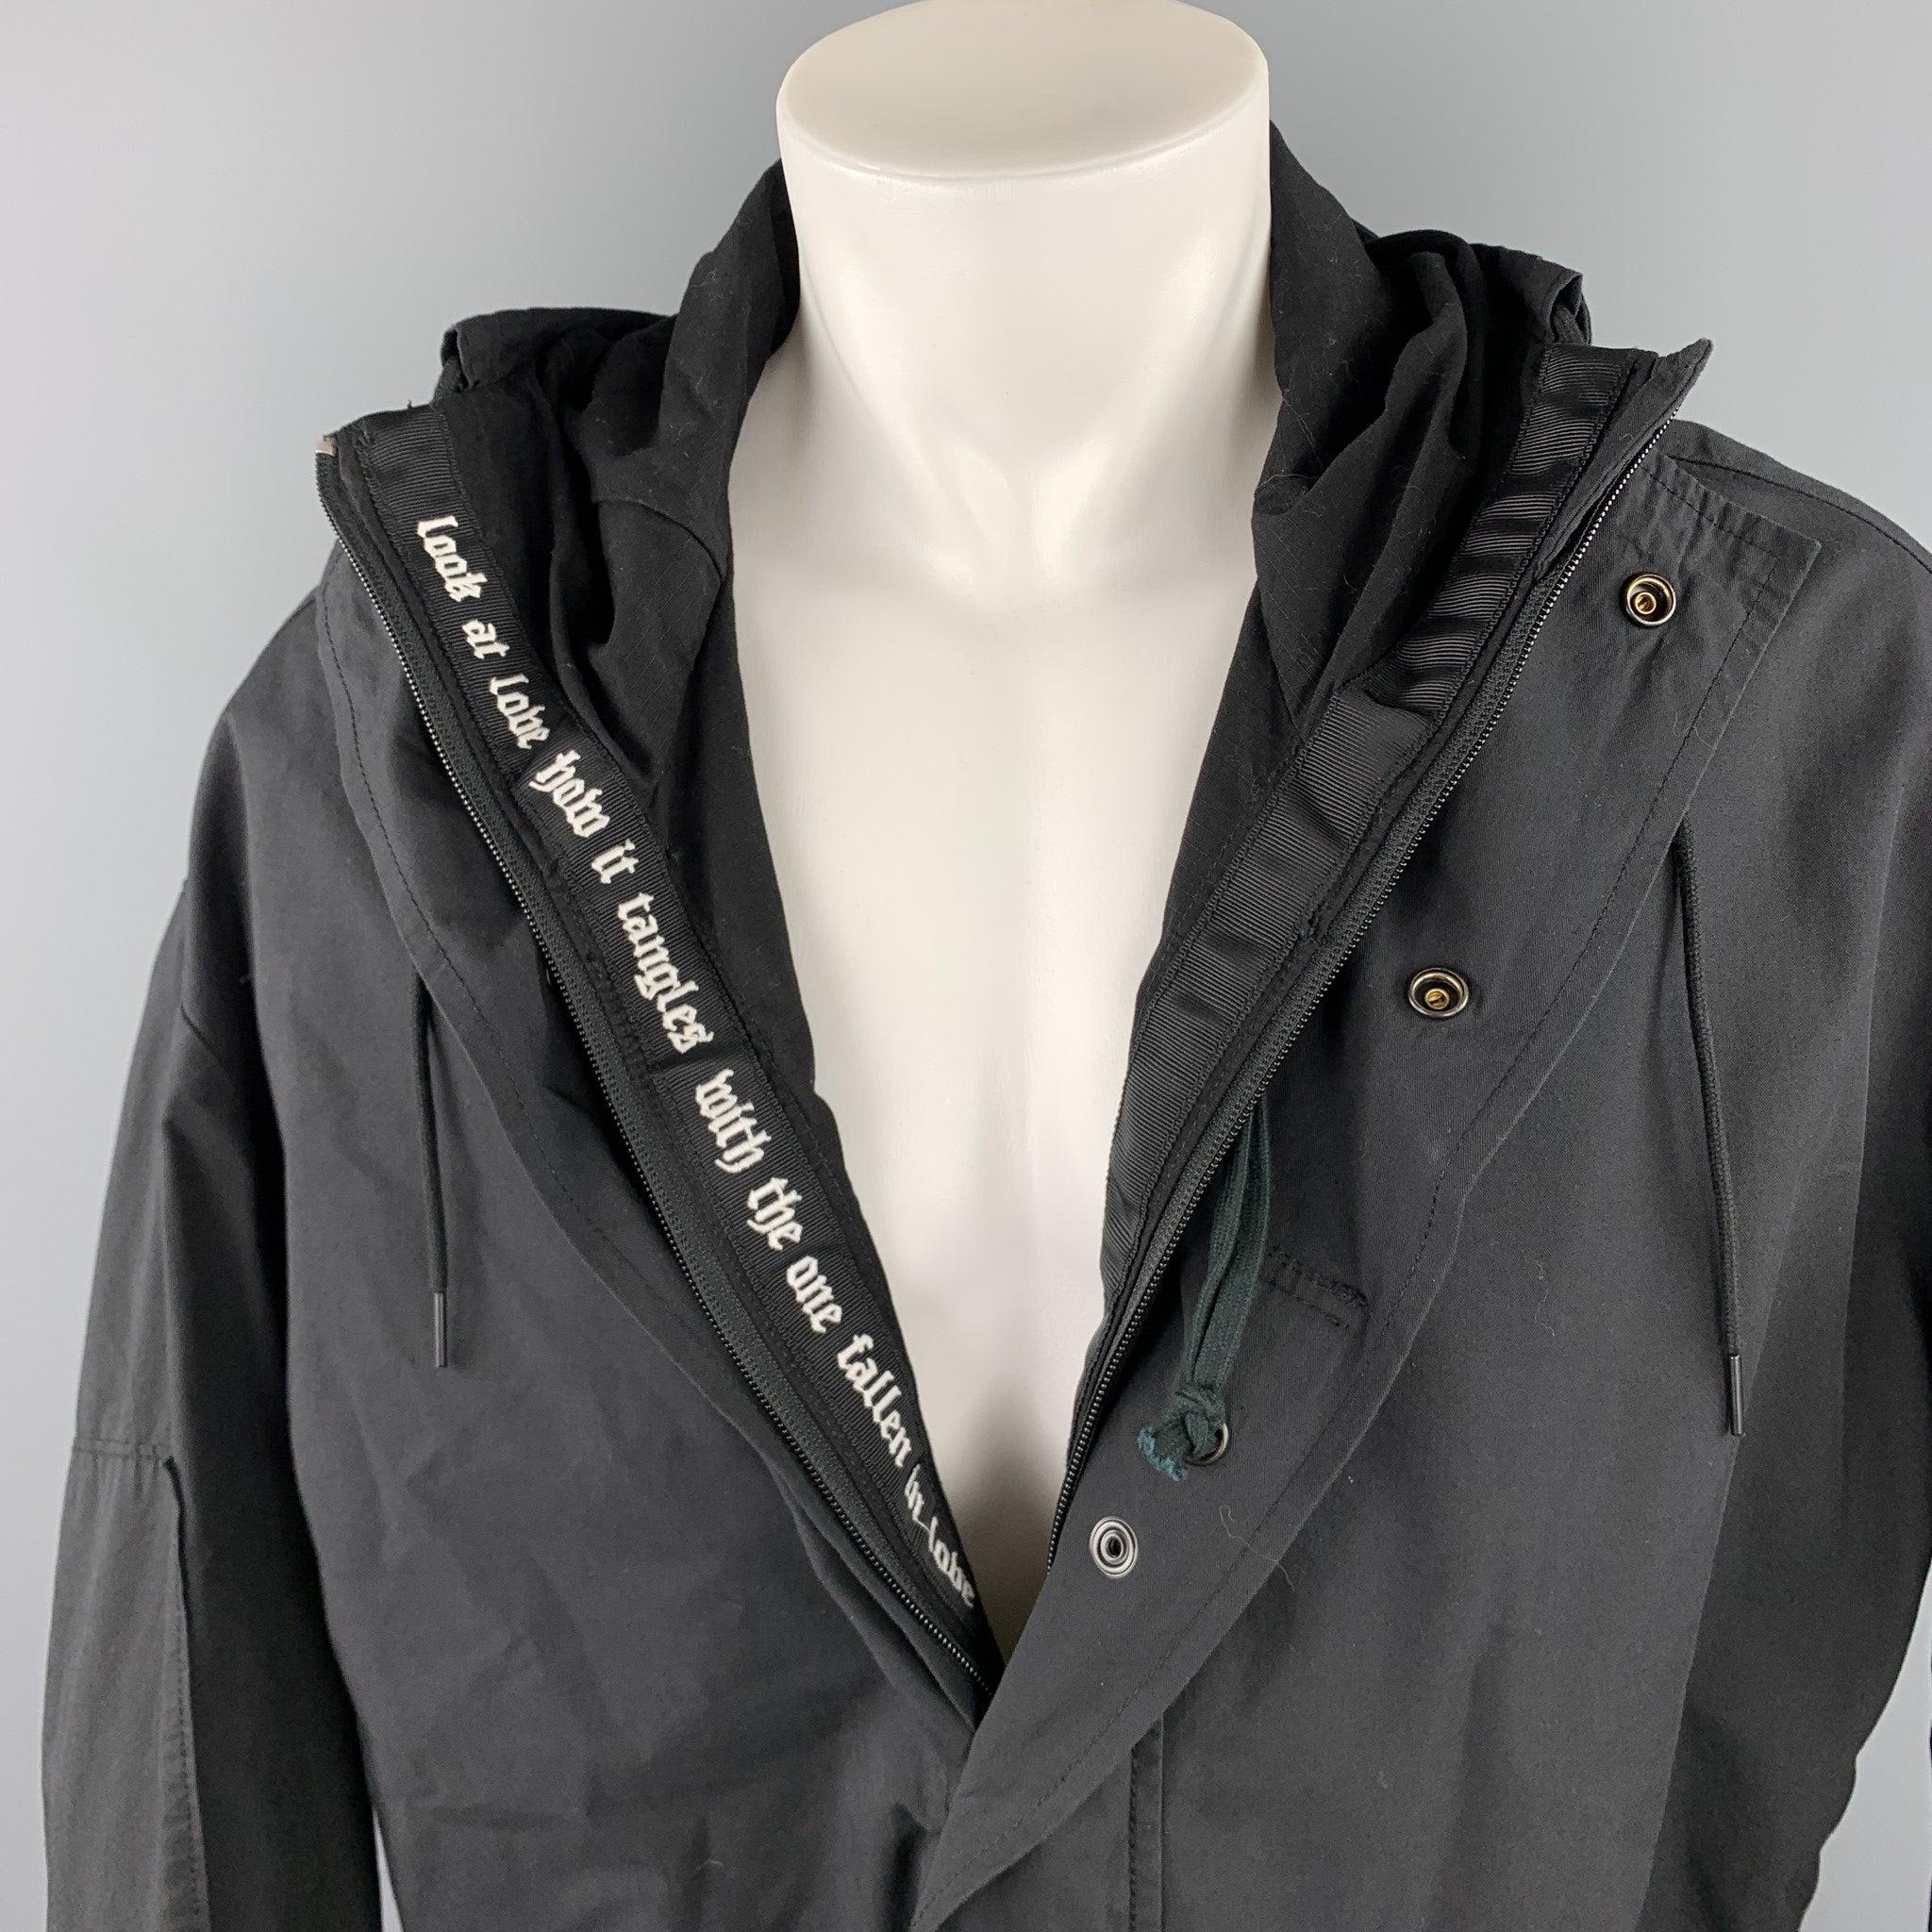 Der Mantel R 13 ist aus schwarzer Baumwolle/Nylon und hat einen Oversized-Stil, eine Innenstickerei, eine Kapuze, große Reißverschlusstaschen, einen Kordelzug und einen Reißverschluss mit Druckknopfverschluss.
Sehr gut
Gebrauchtes Zustand.